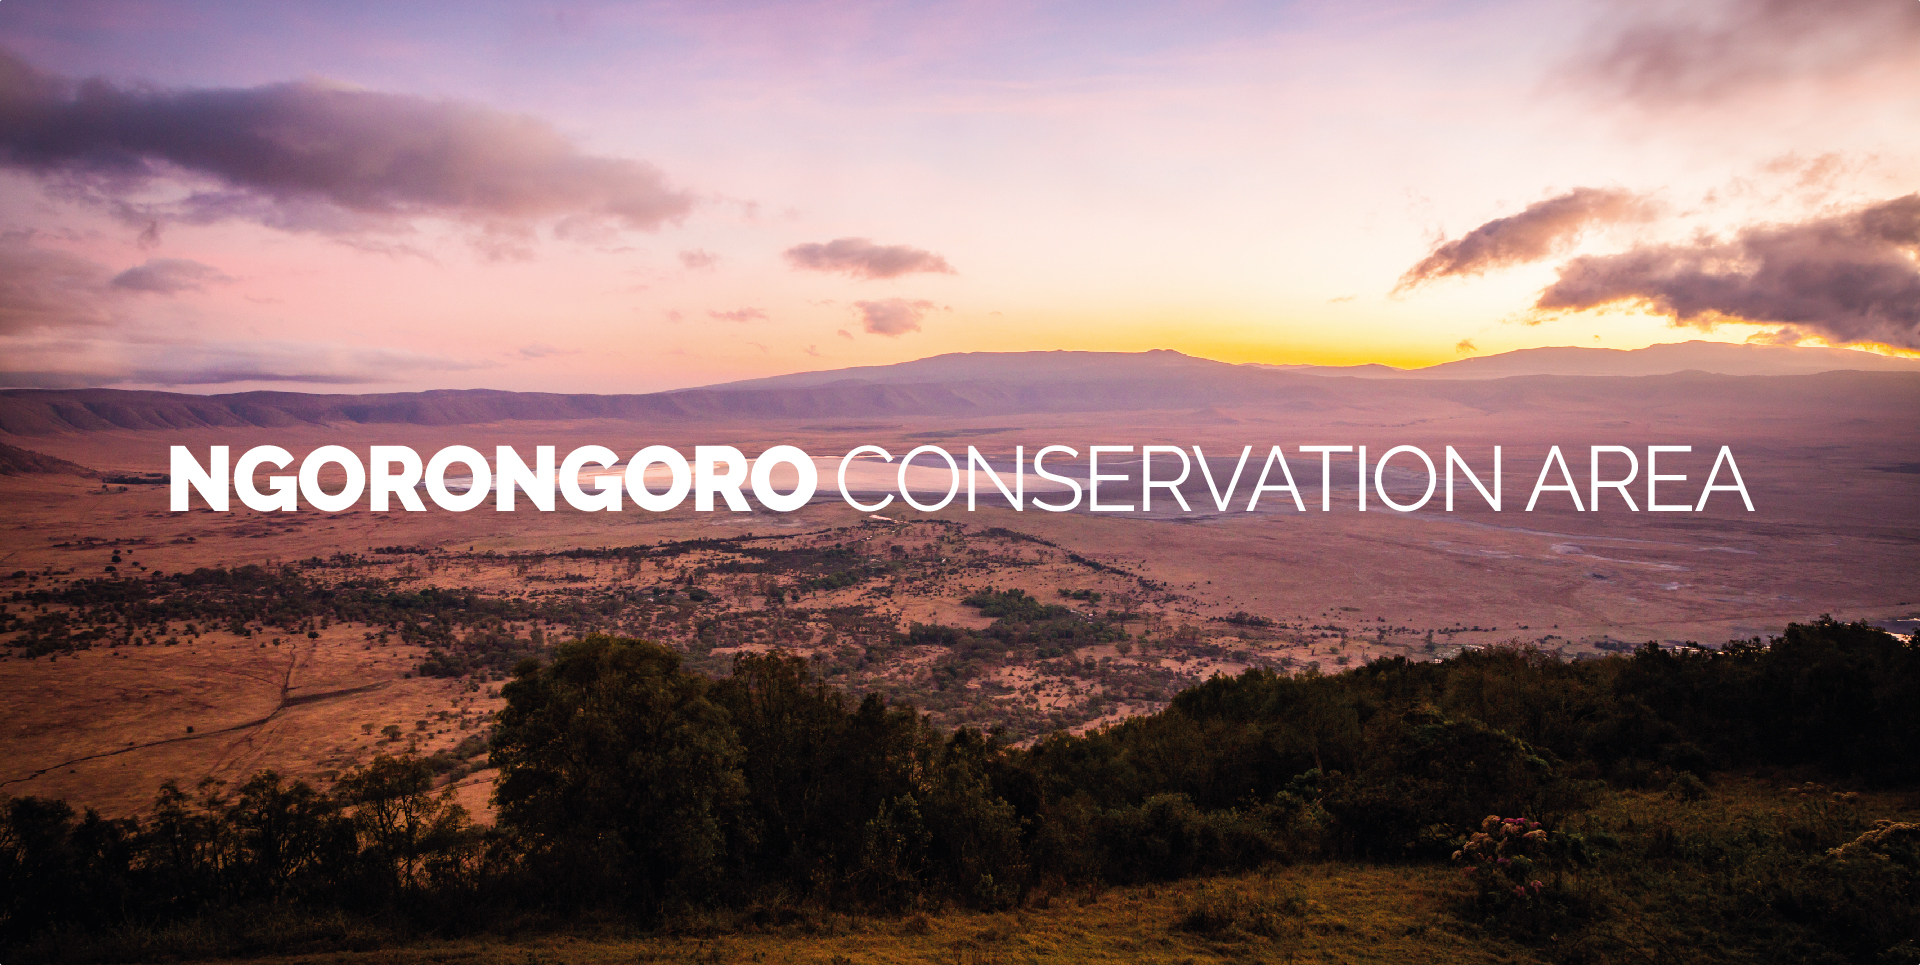 NGORONGORO CONSERVATION AREA